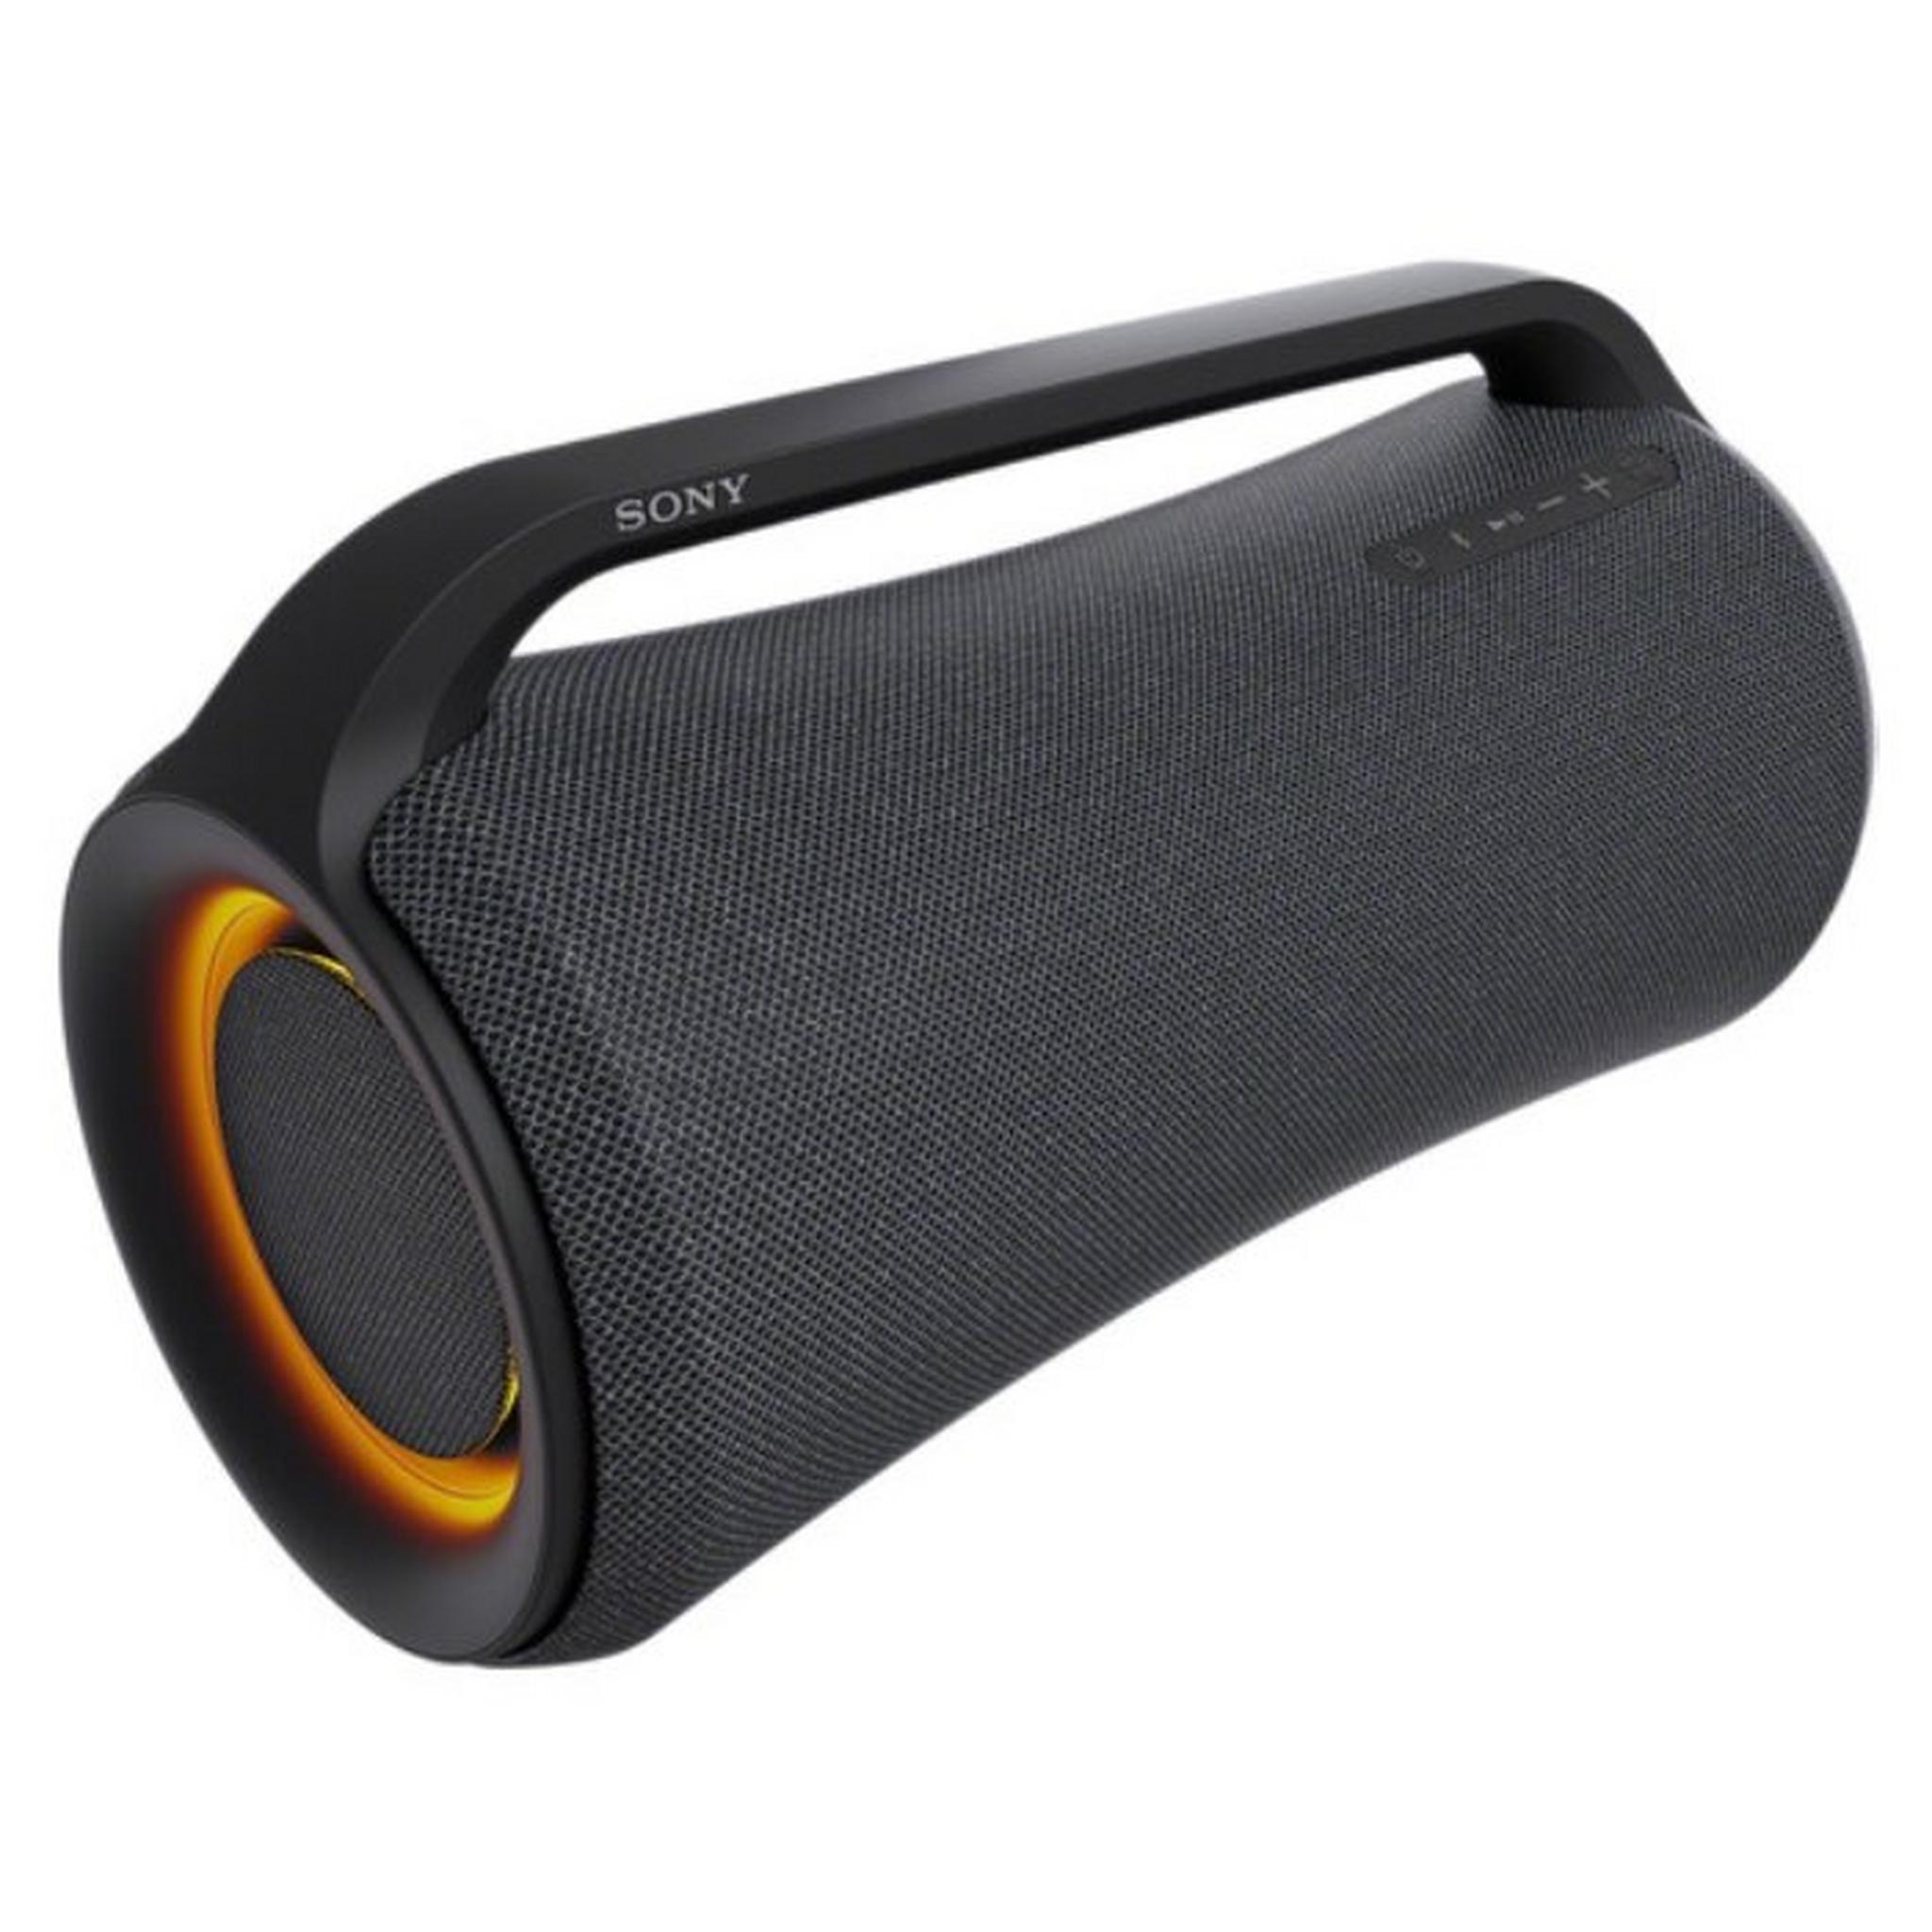 Sony XG500 X-Series Wireless Speaker